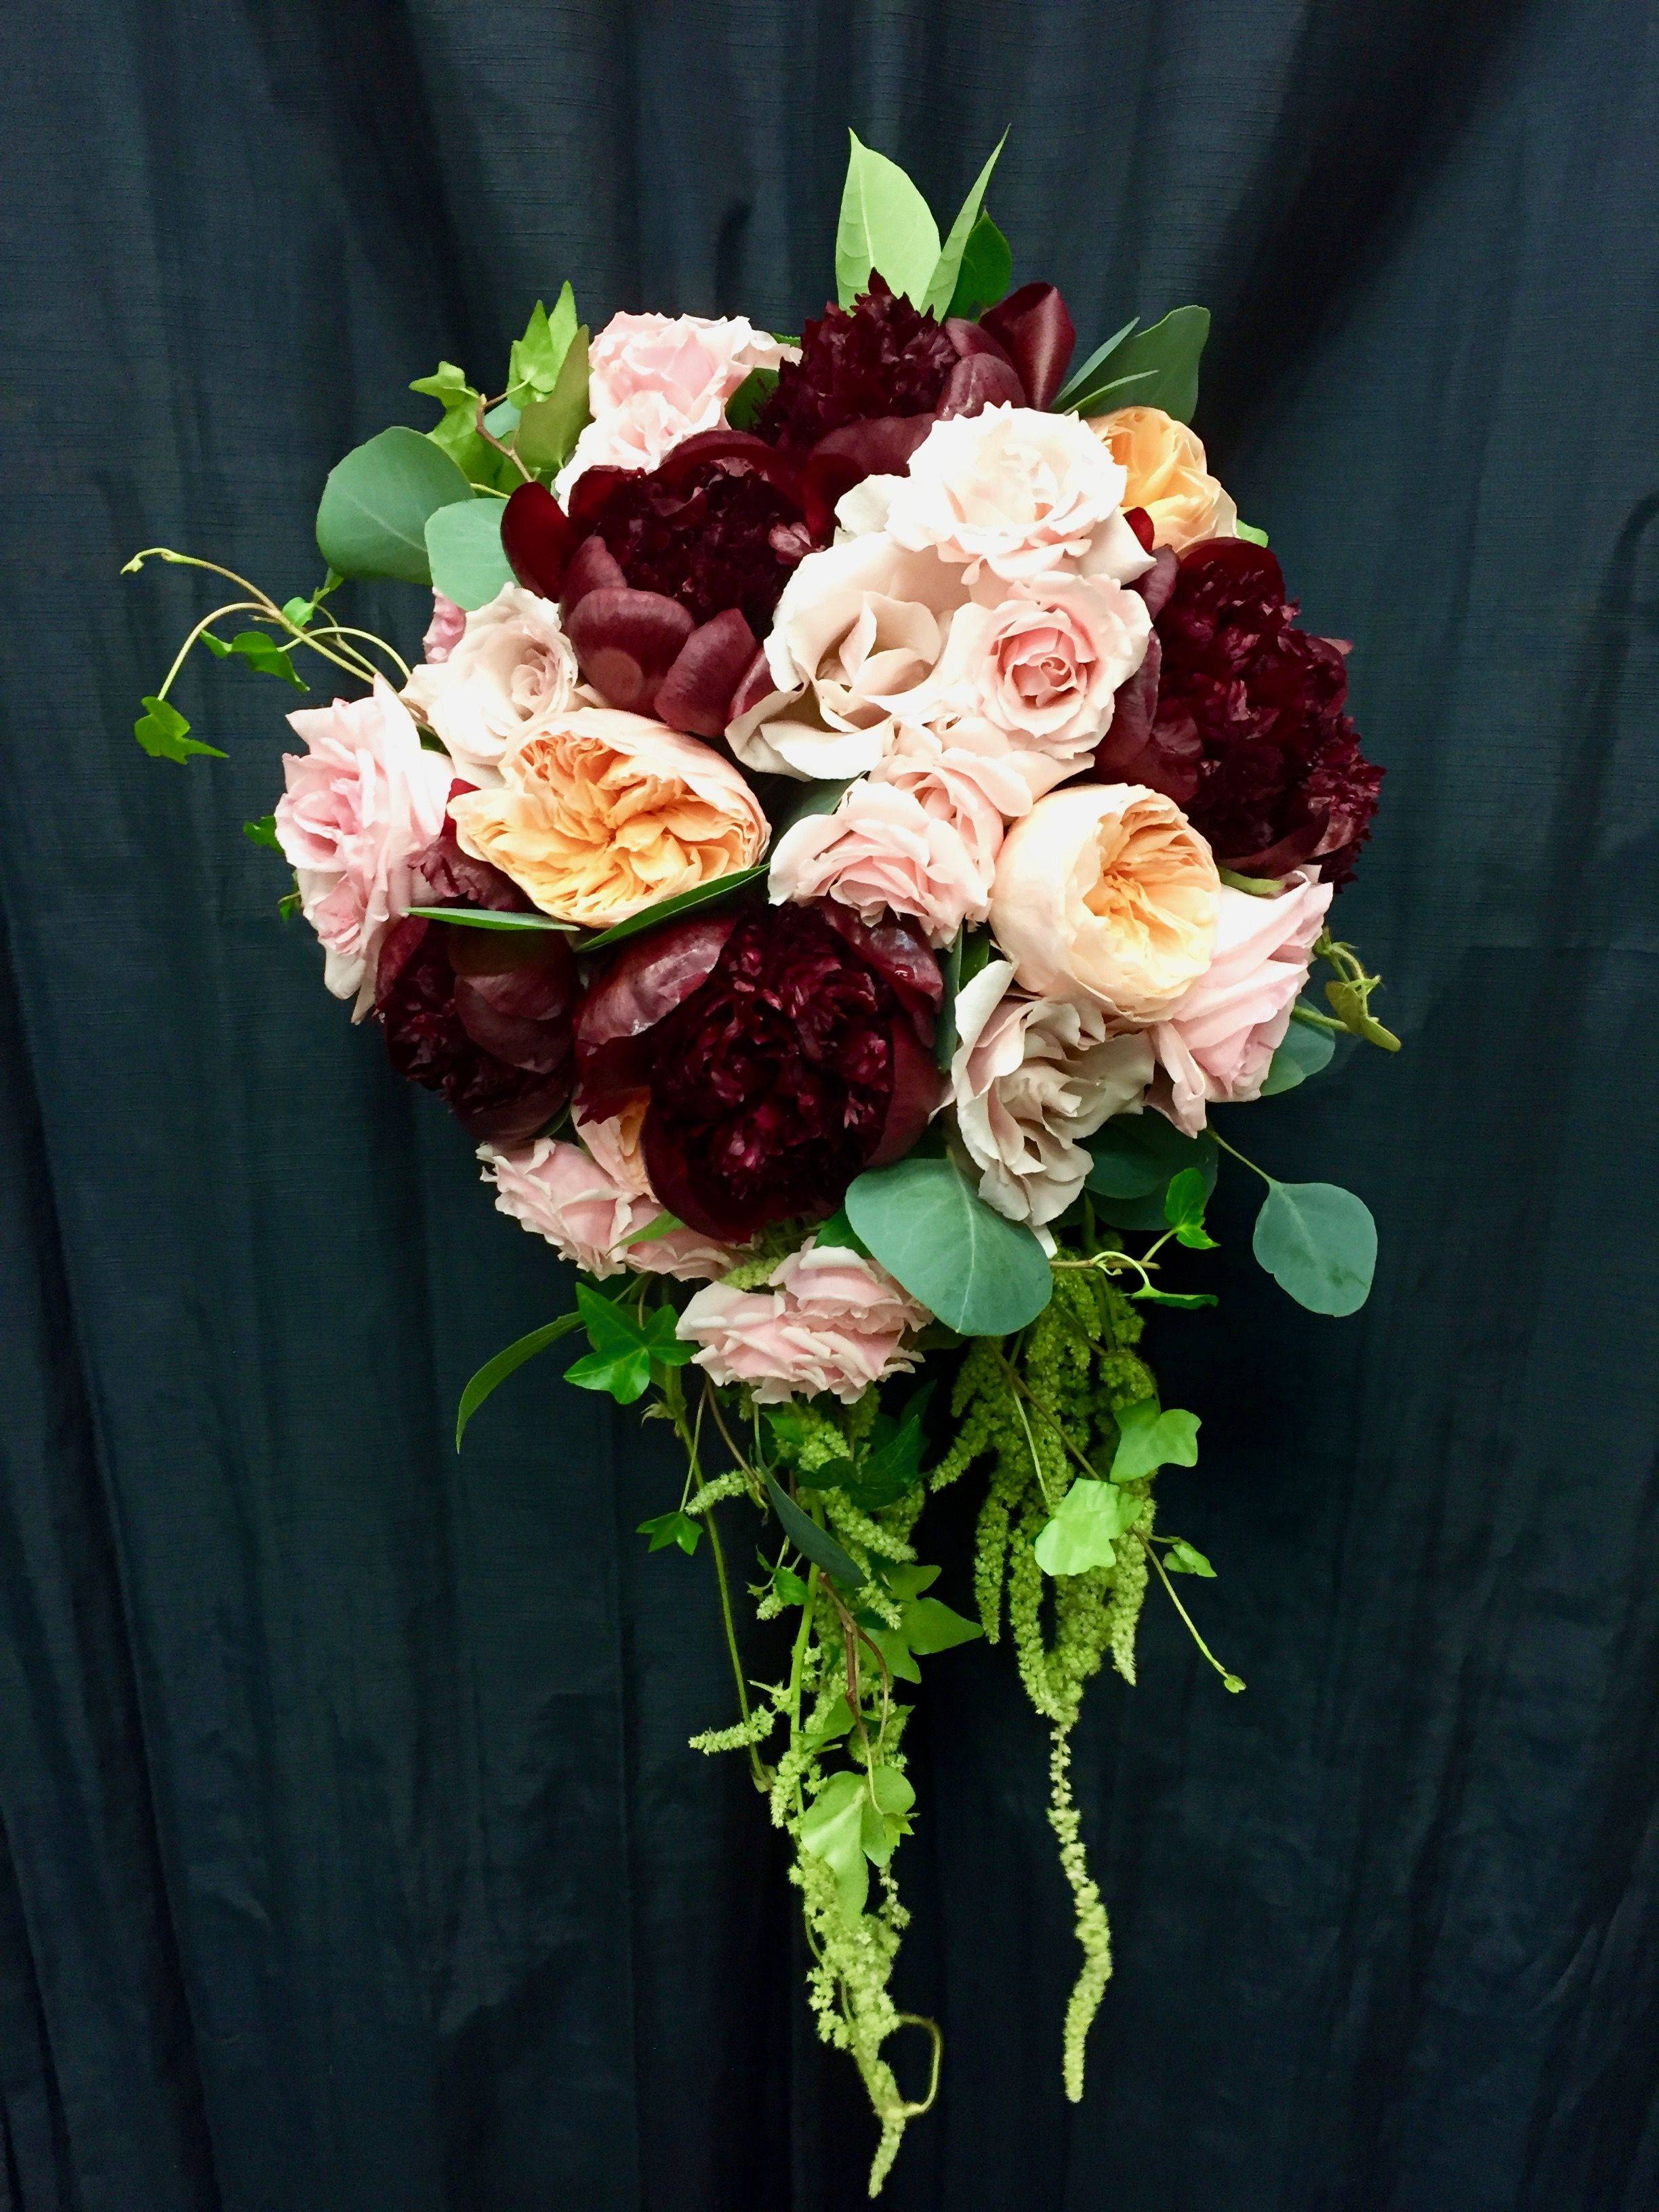 Most Gorgeous Garden Rose Bridal Bouquets